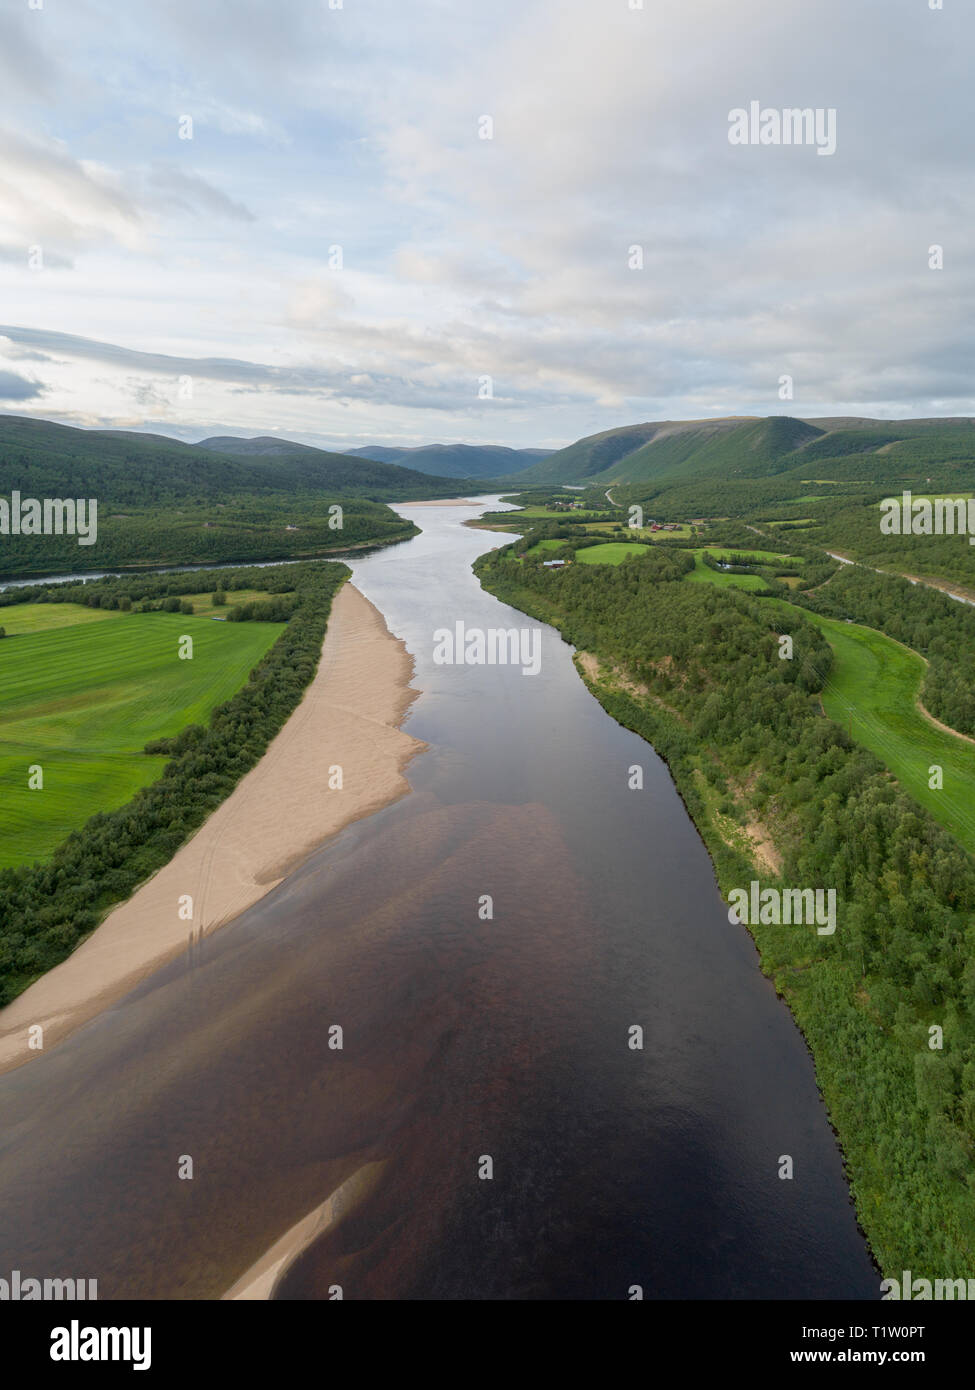 Luftaufnahme von Teno aka Tana River zwischen Norwegen und Finnland im Sommer. Teno River ist bekannt für seine Lachsfischerei bekannt. Stockfoto